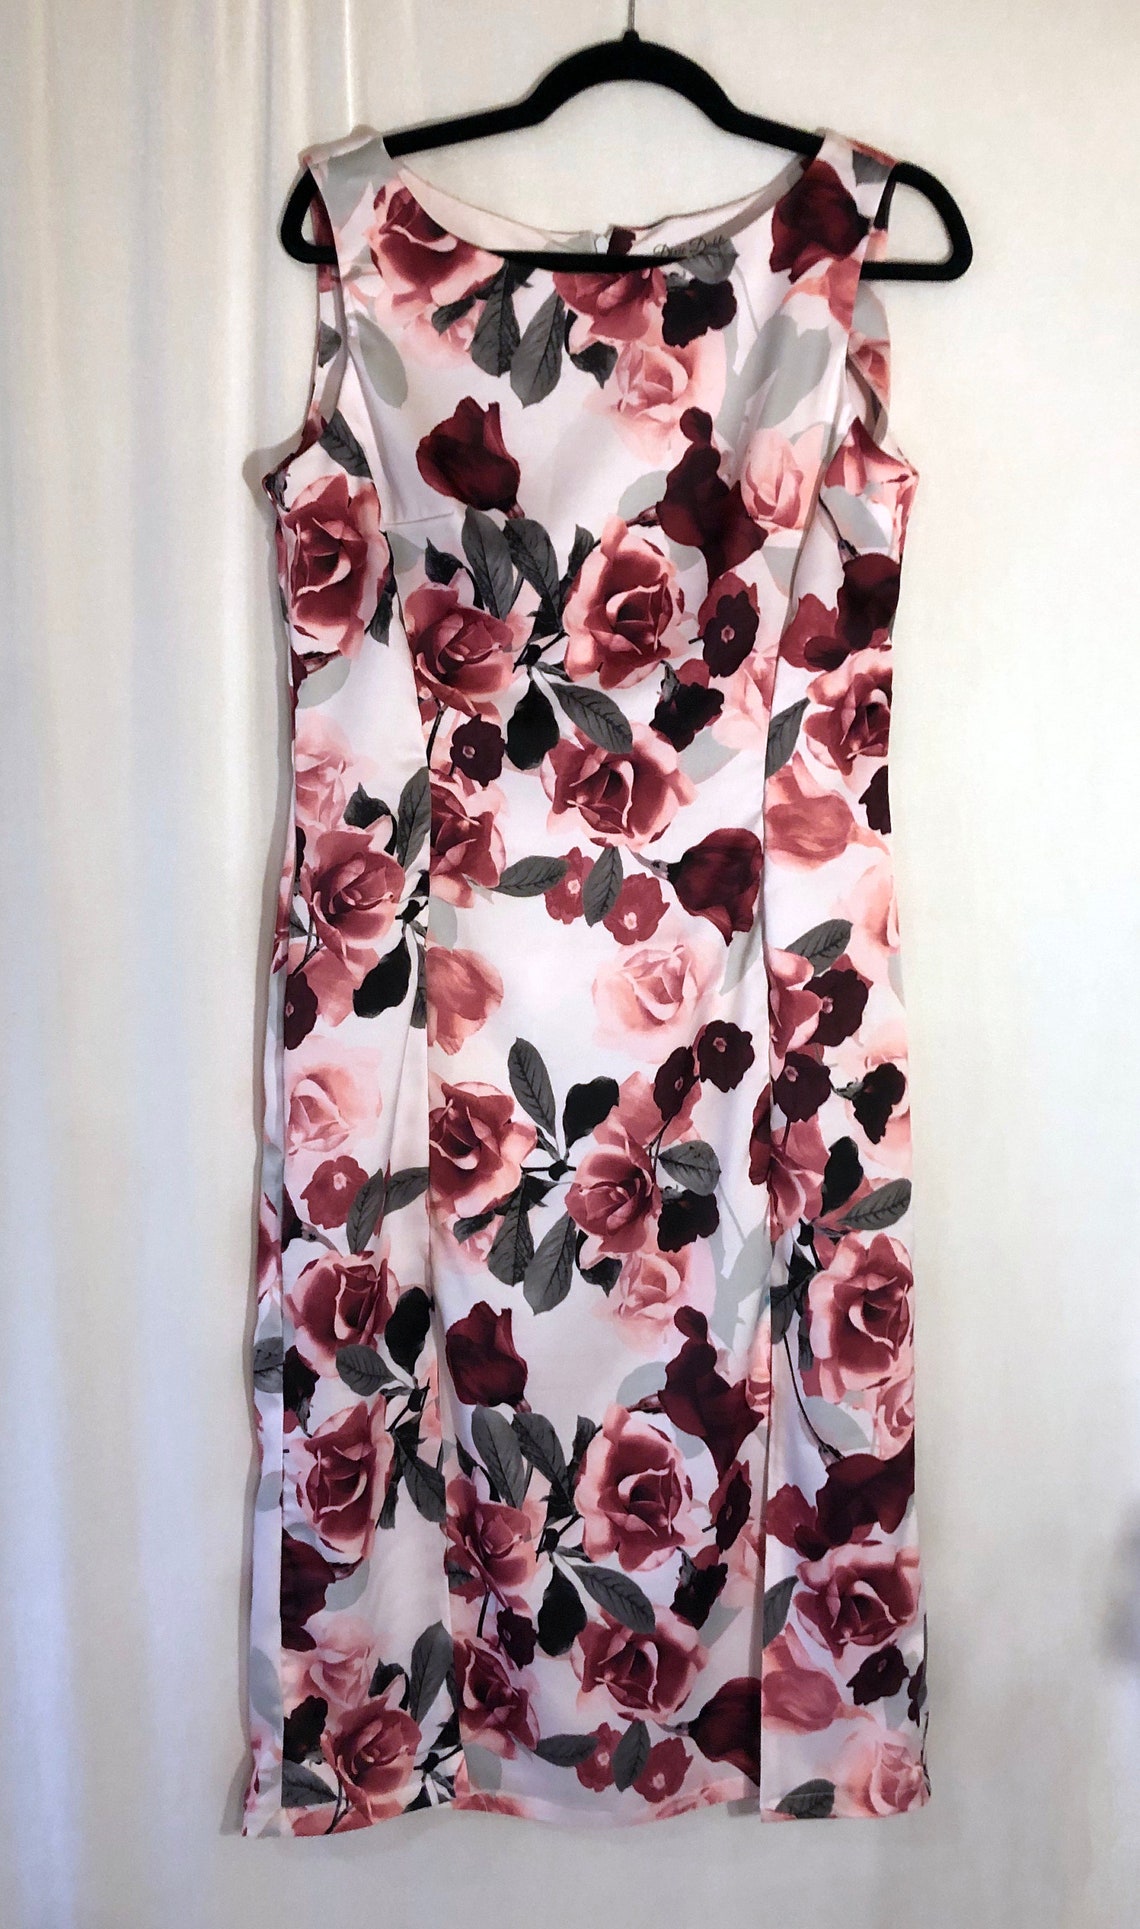 White/black/pink/red Digital Floral Rose Print Dress - Etsy